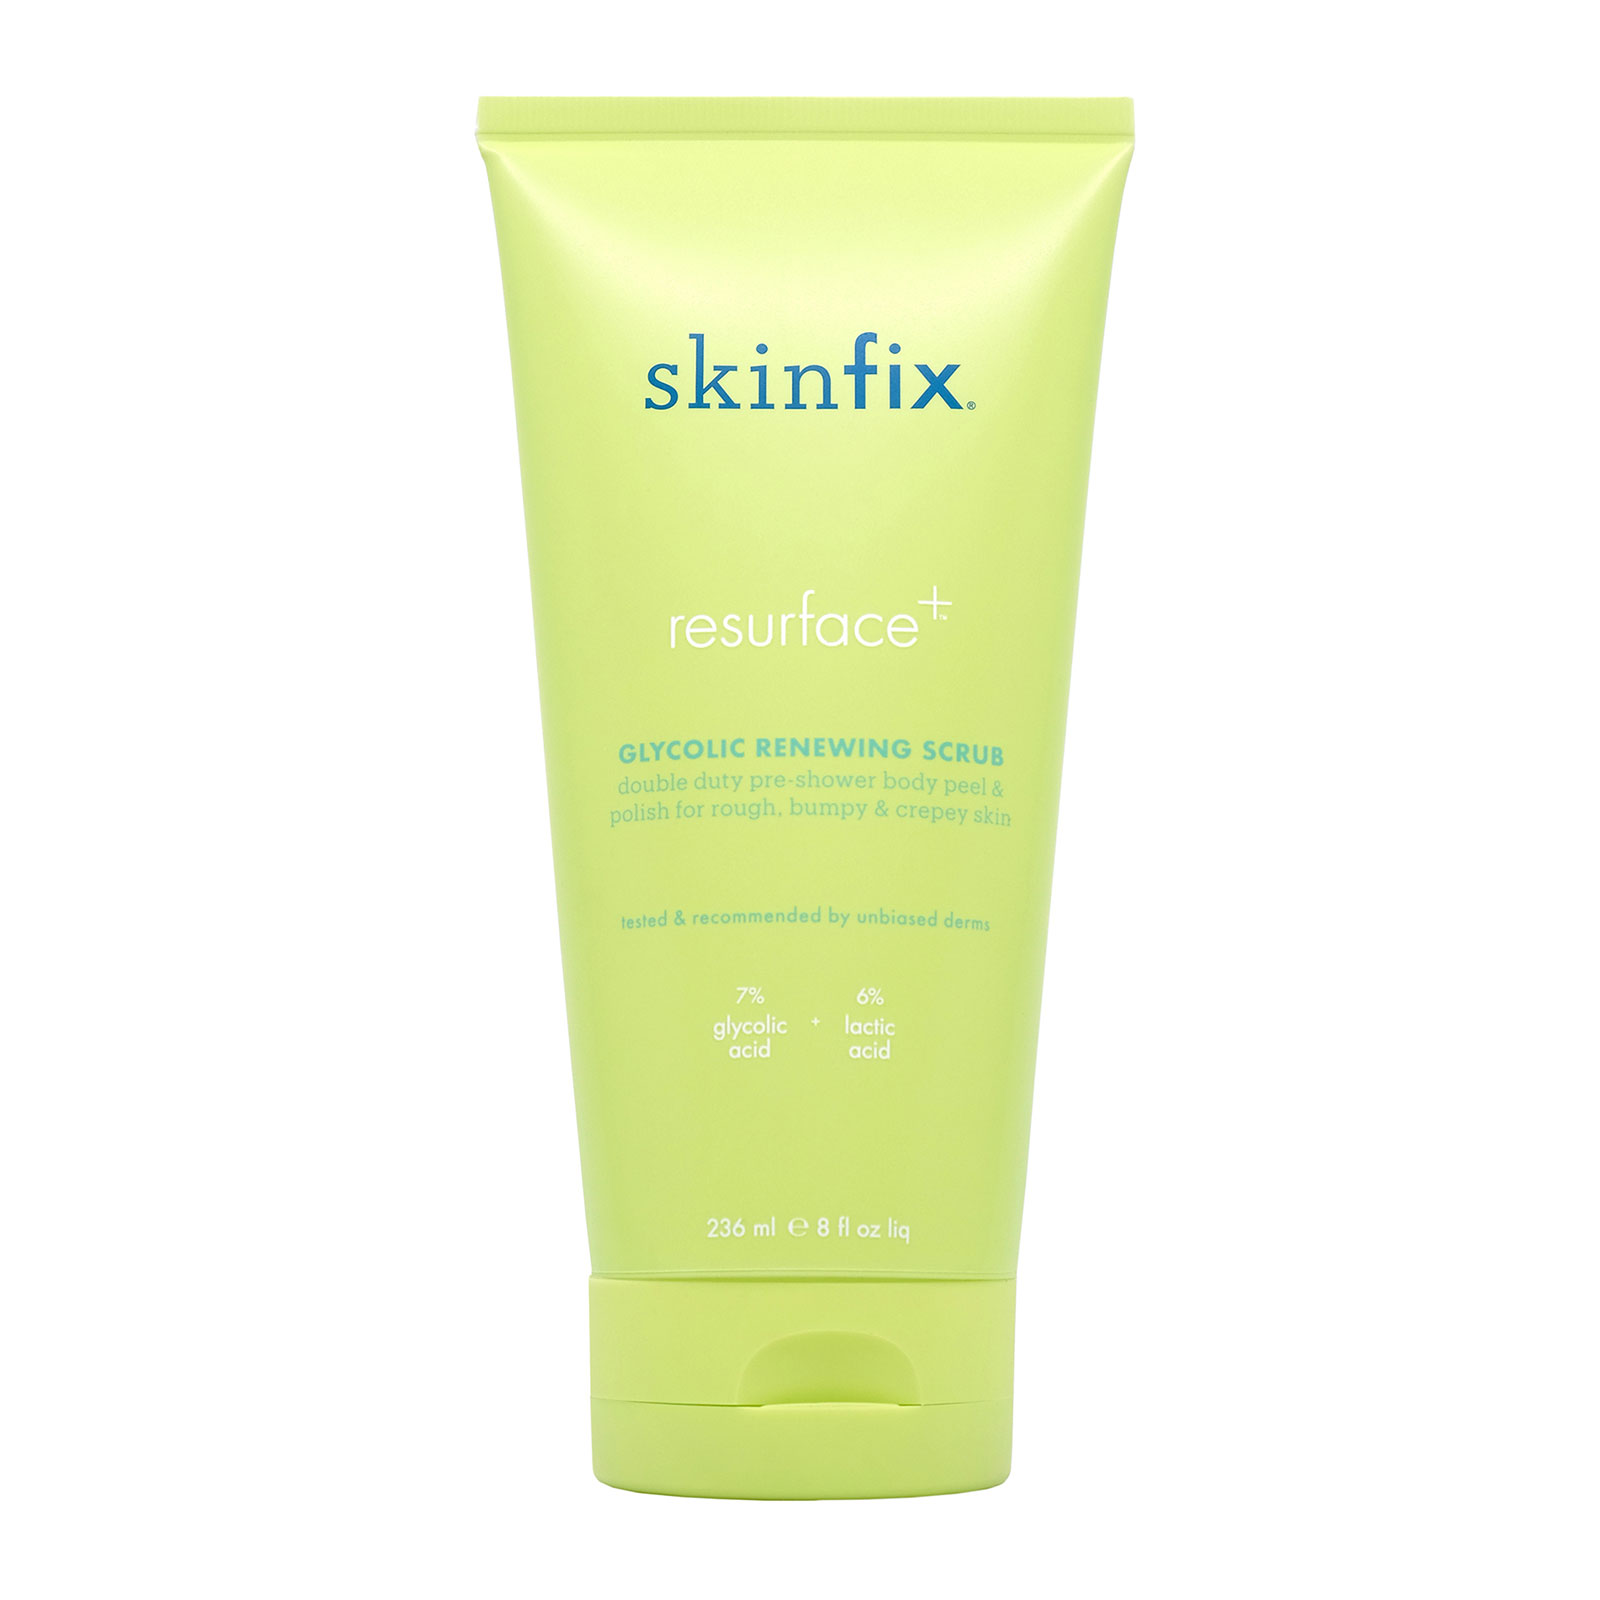 Skinfix Resurface+Glycolic Renewing Scrub 236Ml